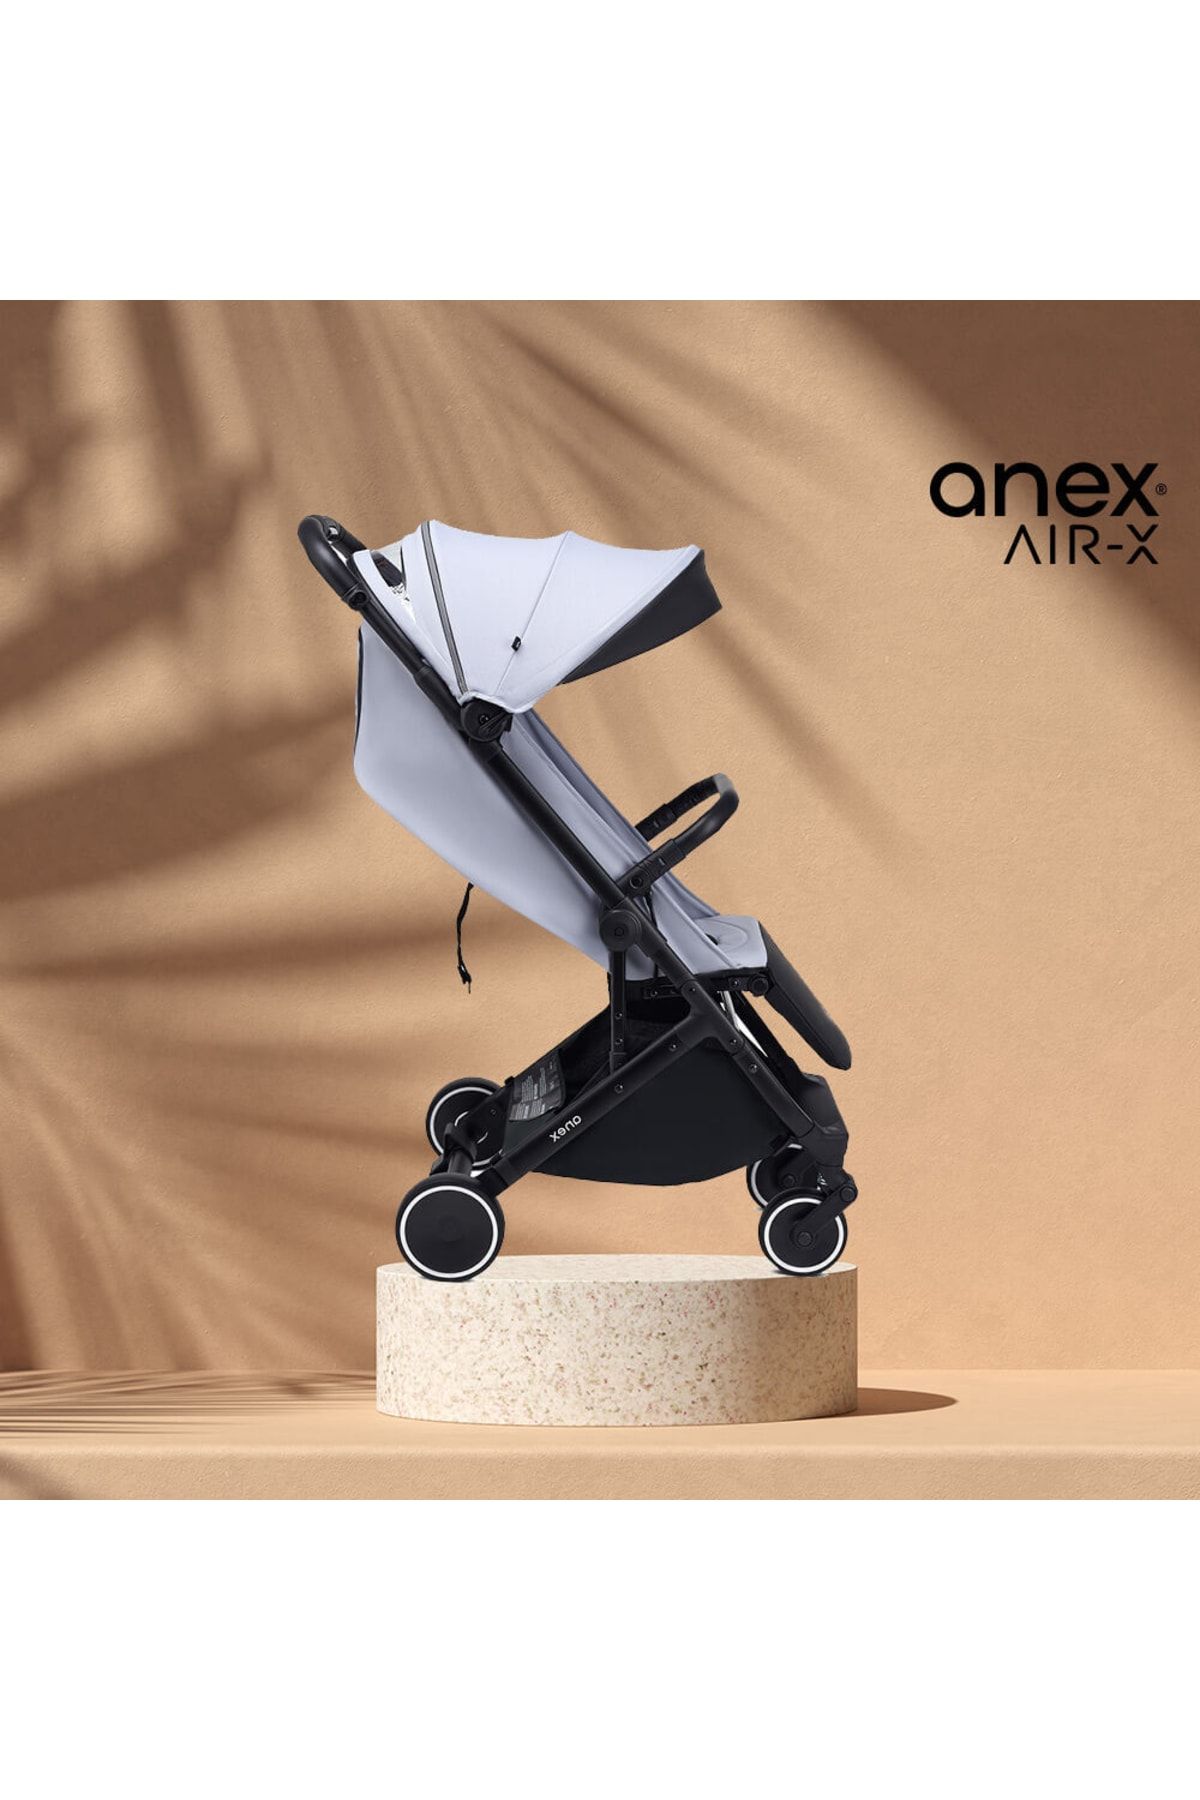 Anex ® Air-x - Gri- Kabin Boy Bebek Arabası